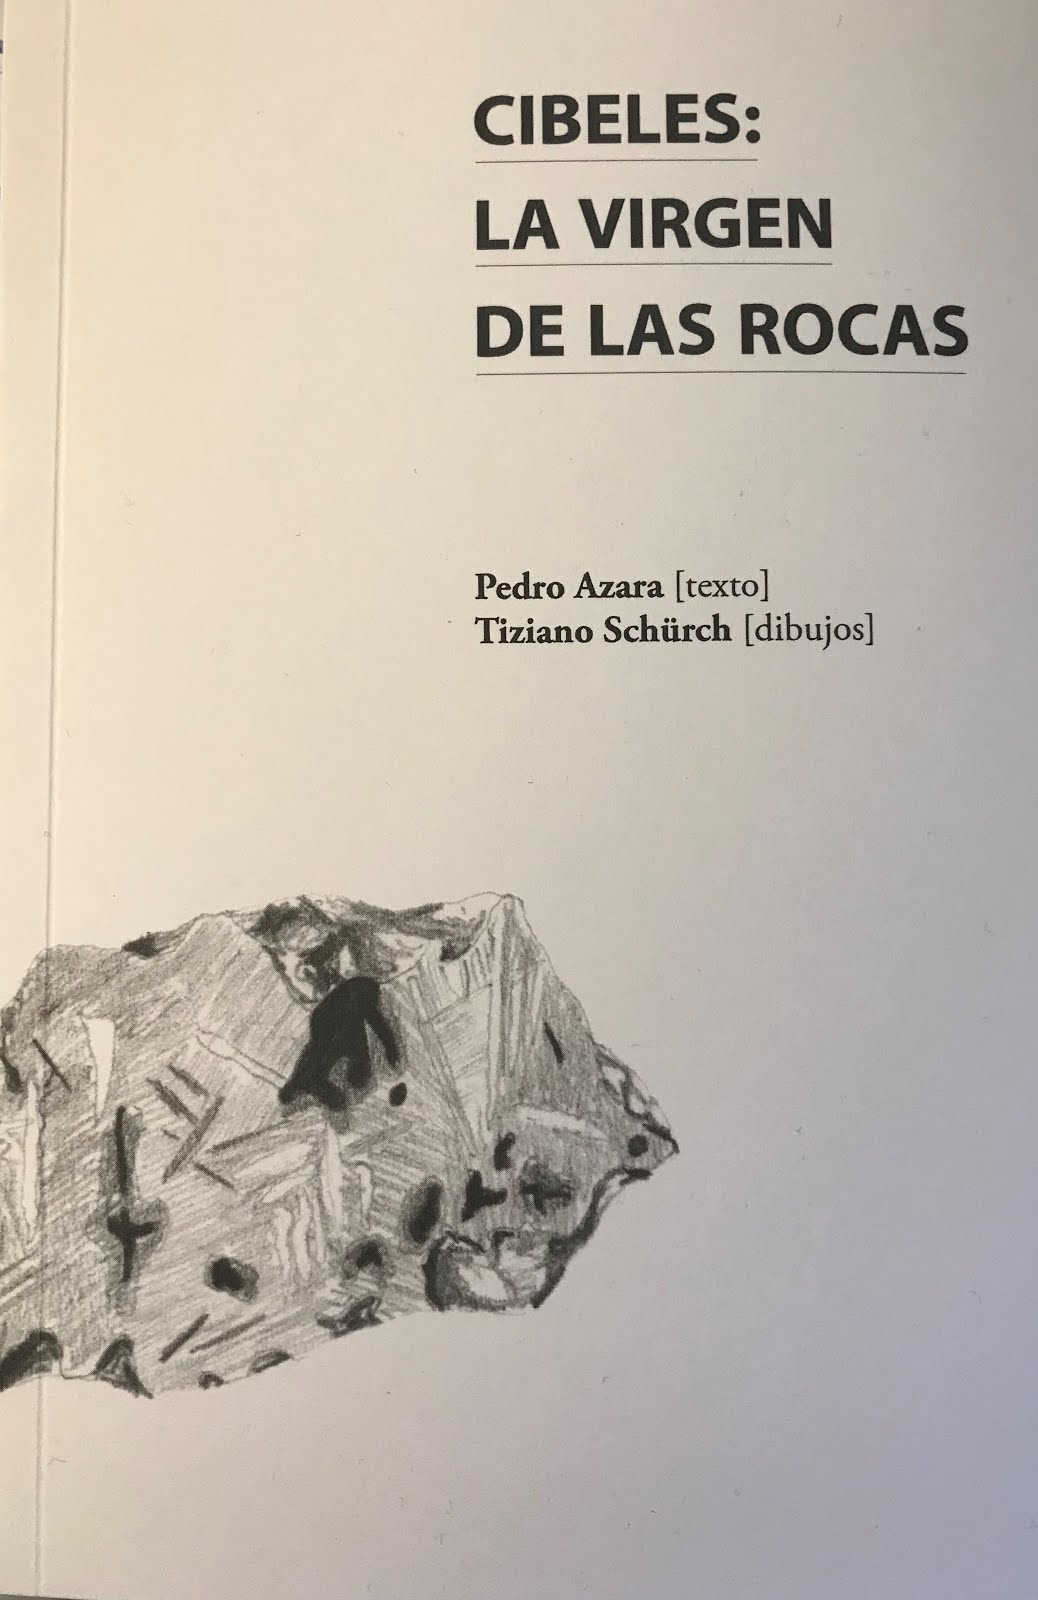 Pedro Azara & Tiziano Schürch: Cibeles, la virgen de las rocas